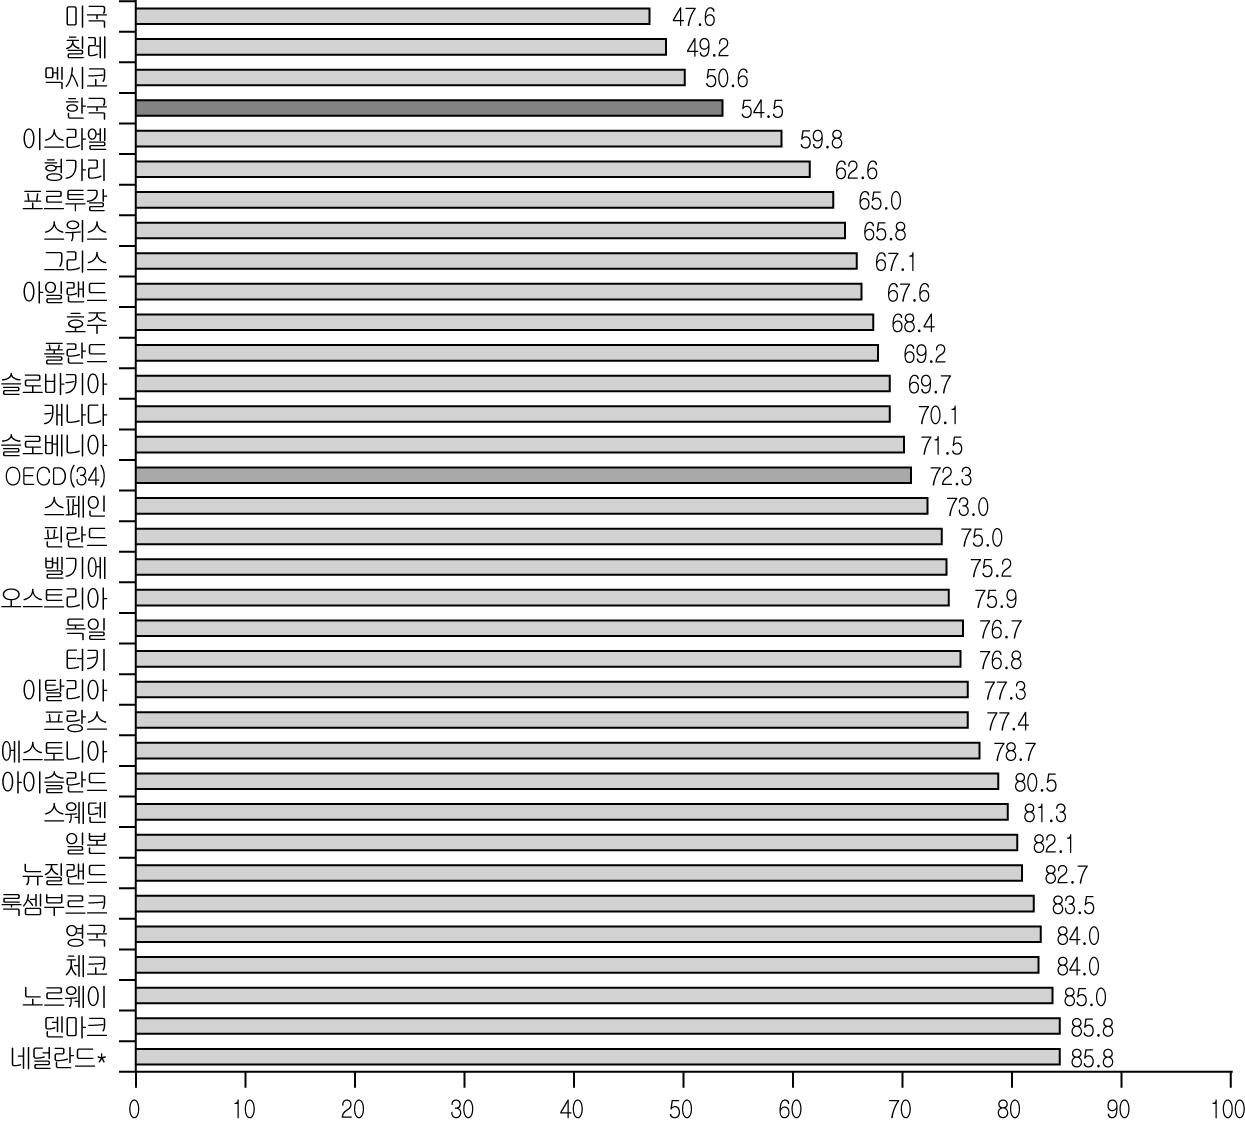 [그림 4－2] 국민의료비 중 공공재원 비율(2012년)